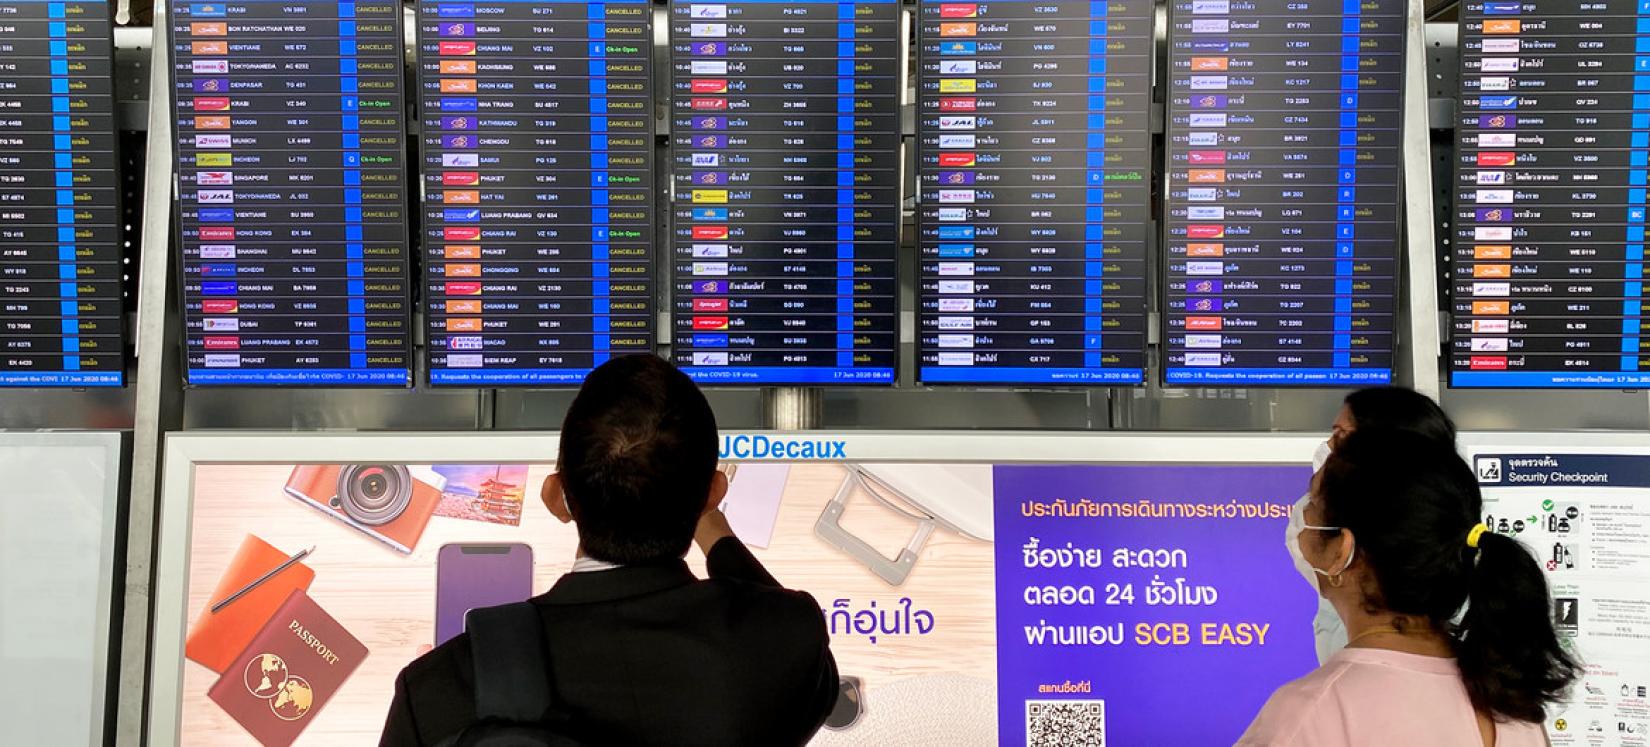 Turistas, como estes no aeroporto de Bangkok, ainda enfrentam muitas restrições de viagem devido às medidas de controle da pandemia.